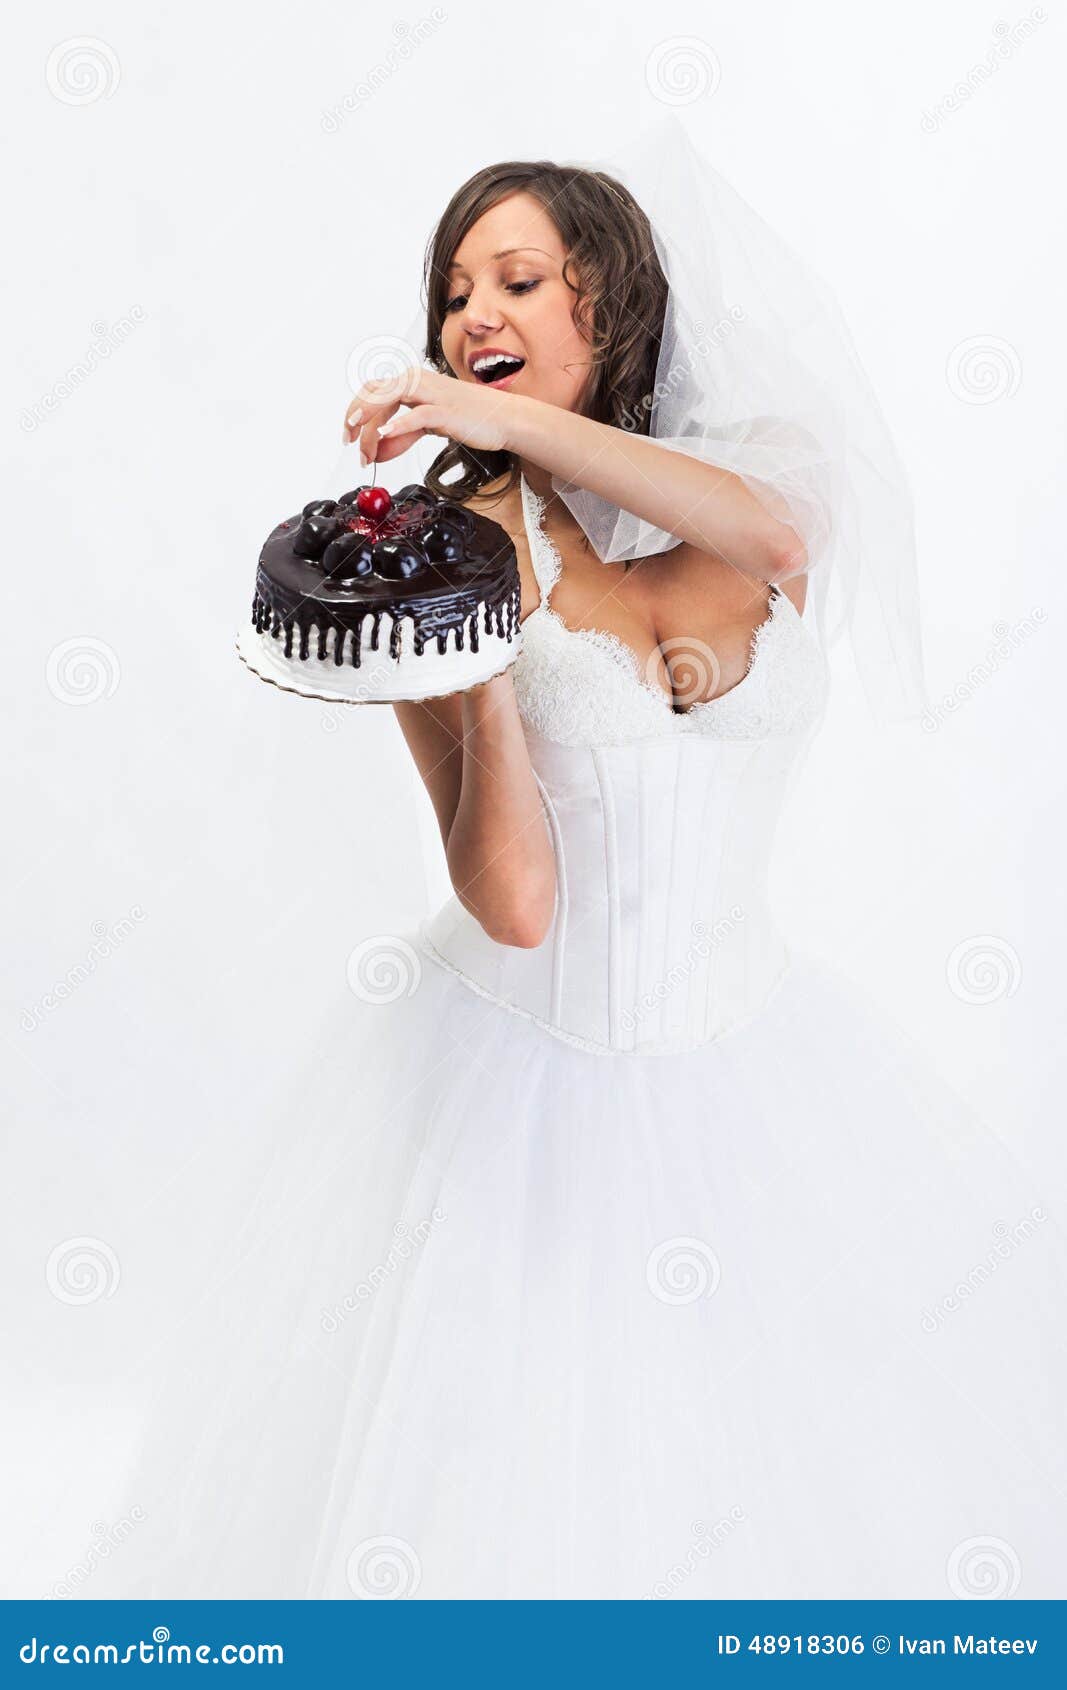 新娘蛋糕新郎婚礼 库存照片. 图片 包括有 丈夫, 一起, 活动, 蛋糕, 当事人, 婚姻, 新婚佳偶, 妻子 - 4733292